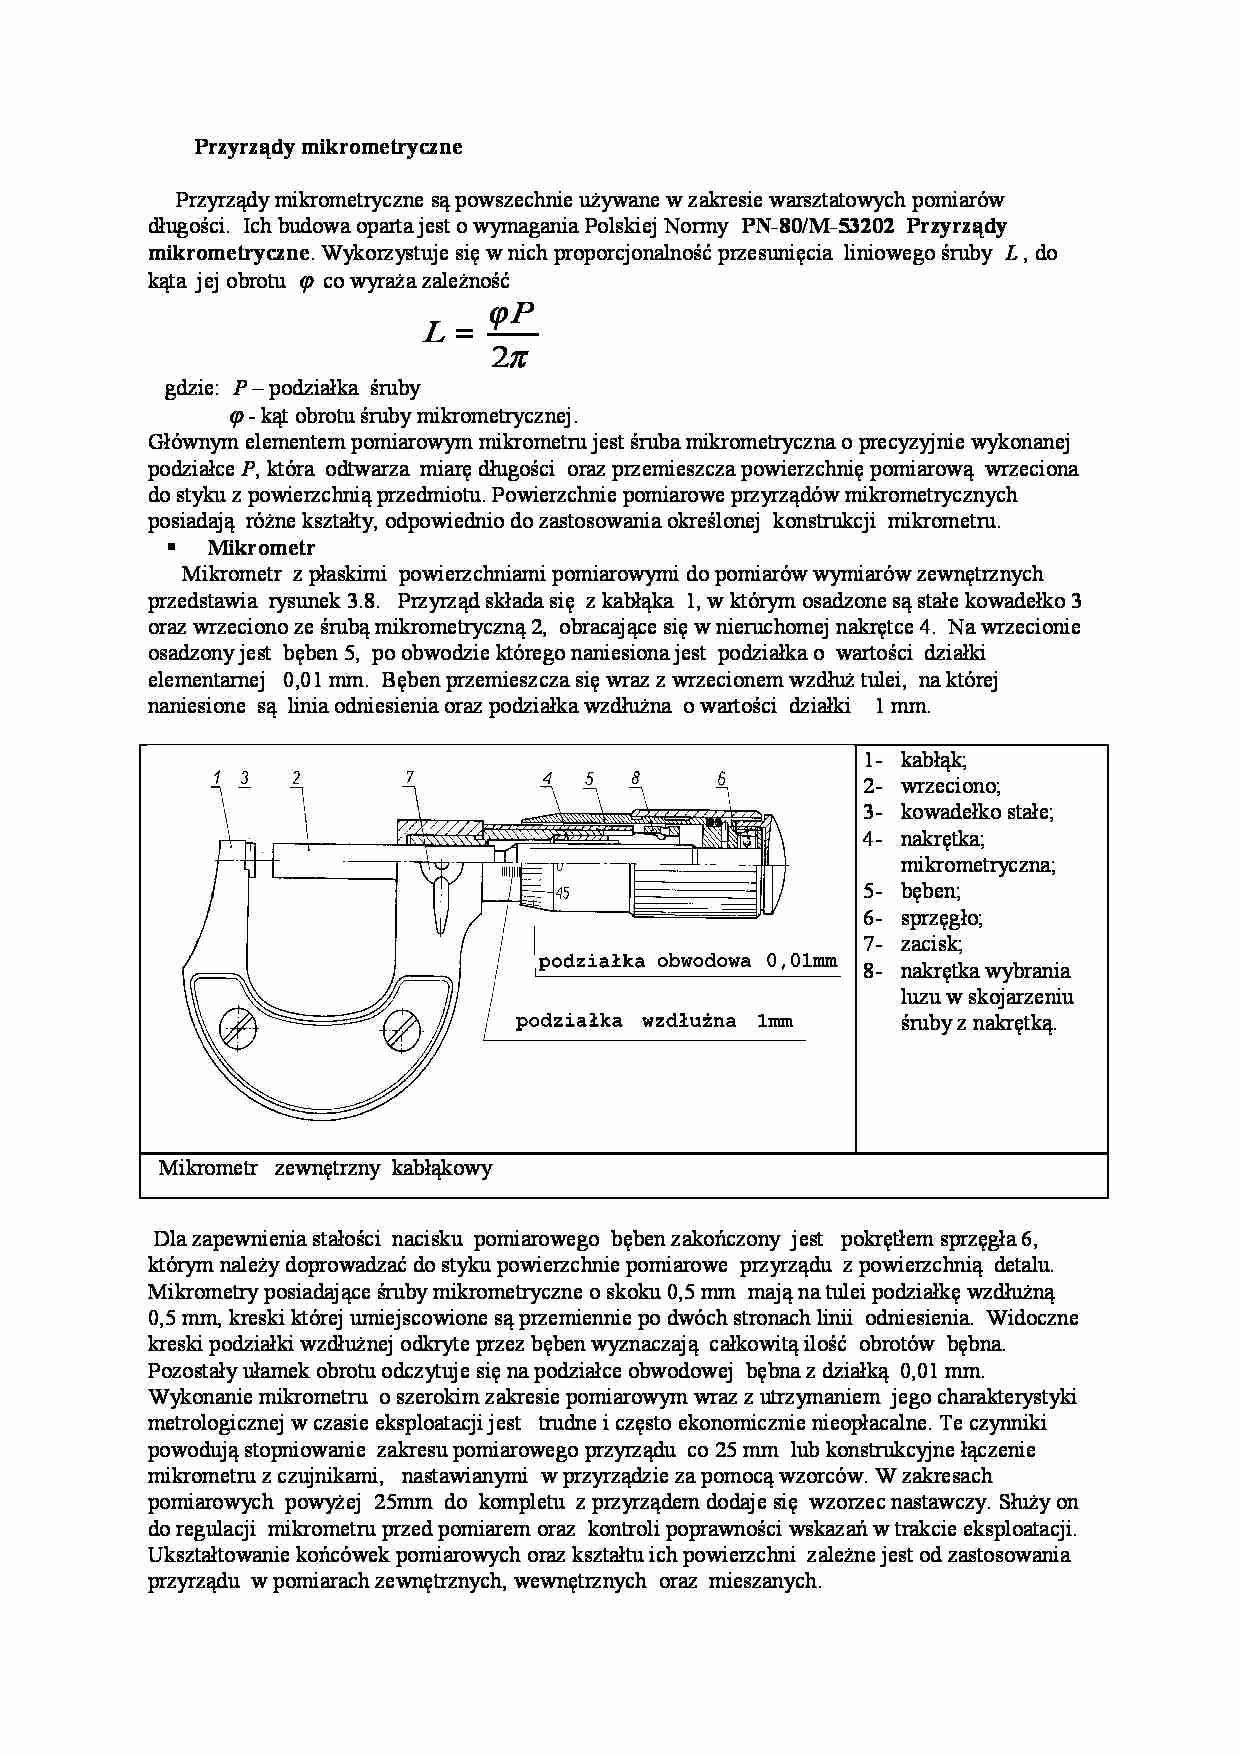 Przyrządy mikrometryczne - strona 1